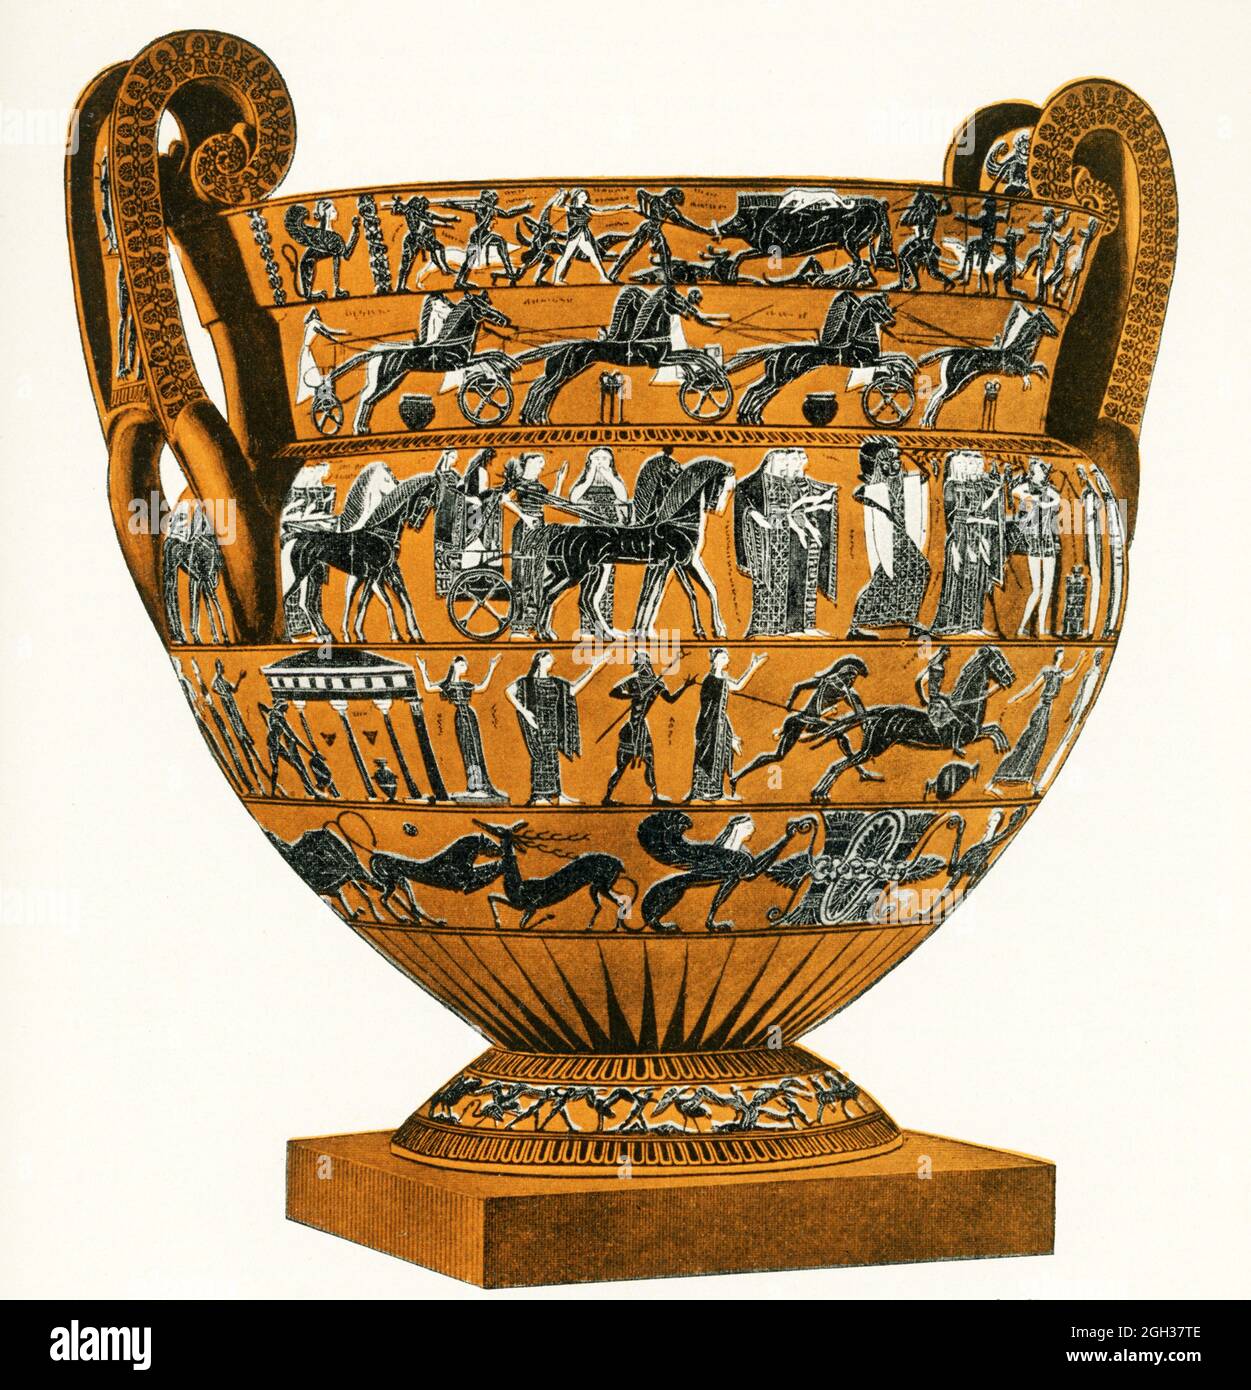 Monument majeur de l'histoire de la poterie grecque, le François Vase est un grand (66 cm) krater de volute dans un dessin de figure noire, signé à la fois par le potier, Ergotimos, et le peintre, Kleitias (également orthographié Clitias). L'œuvre Attic a été datée de 570 BC. En 1900, un garde de musée mécontent jeta un tabouret sur l'affaire et frapune le vase François à 638 pièces! Il a été restauré par Pietro Zei, incorporant le fragment Strozzi, mais manquant un autre morceau qui avait été volé. Cette pièce a été retournée en 1904. Une nouvelle reconstruction a été effectuée en 1973. Aujourd'hui le krater est situé dans le Floren Banque D'Images